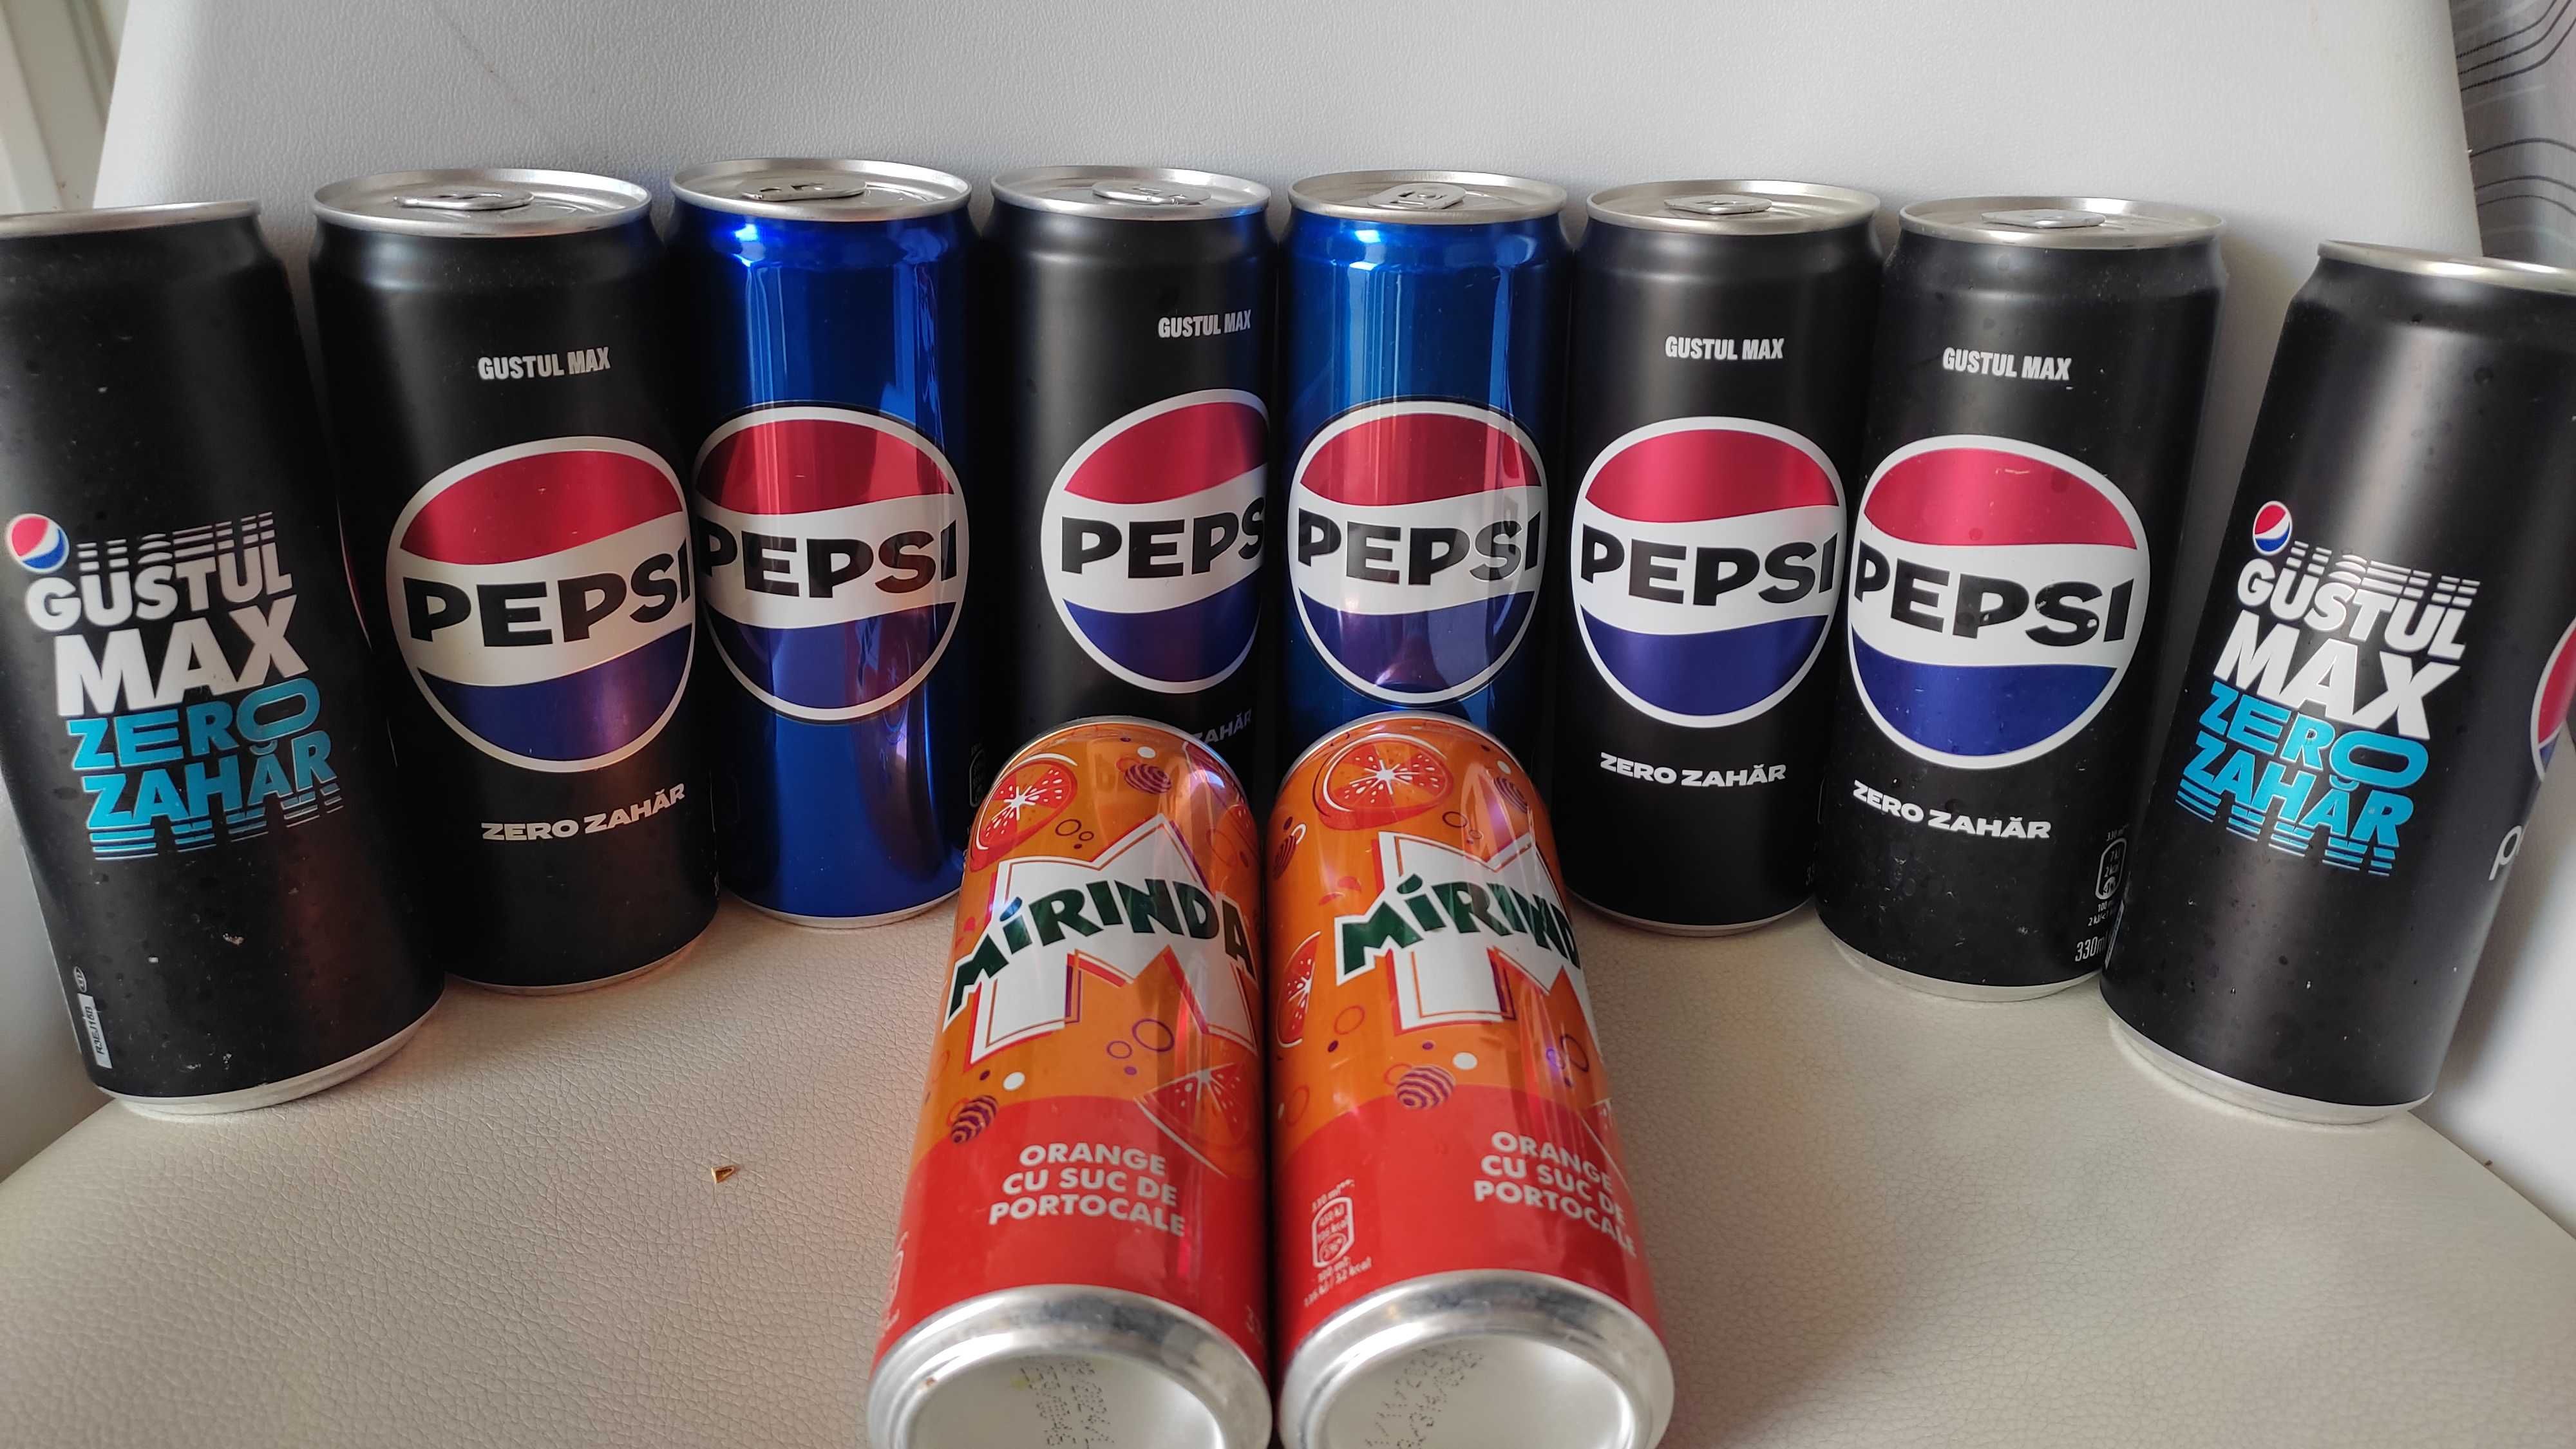 Pepsi, Pepsi Zero Zahar, Pepsi Max Zero, Mirinda doza 0,3L